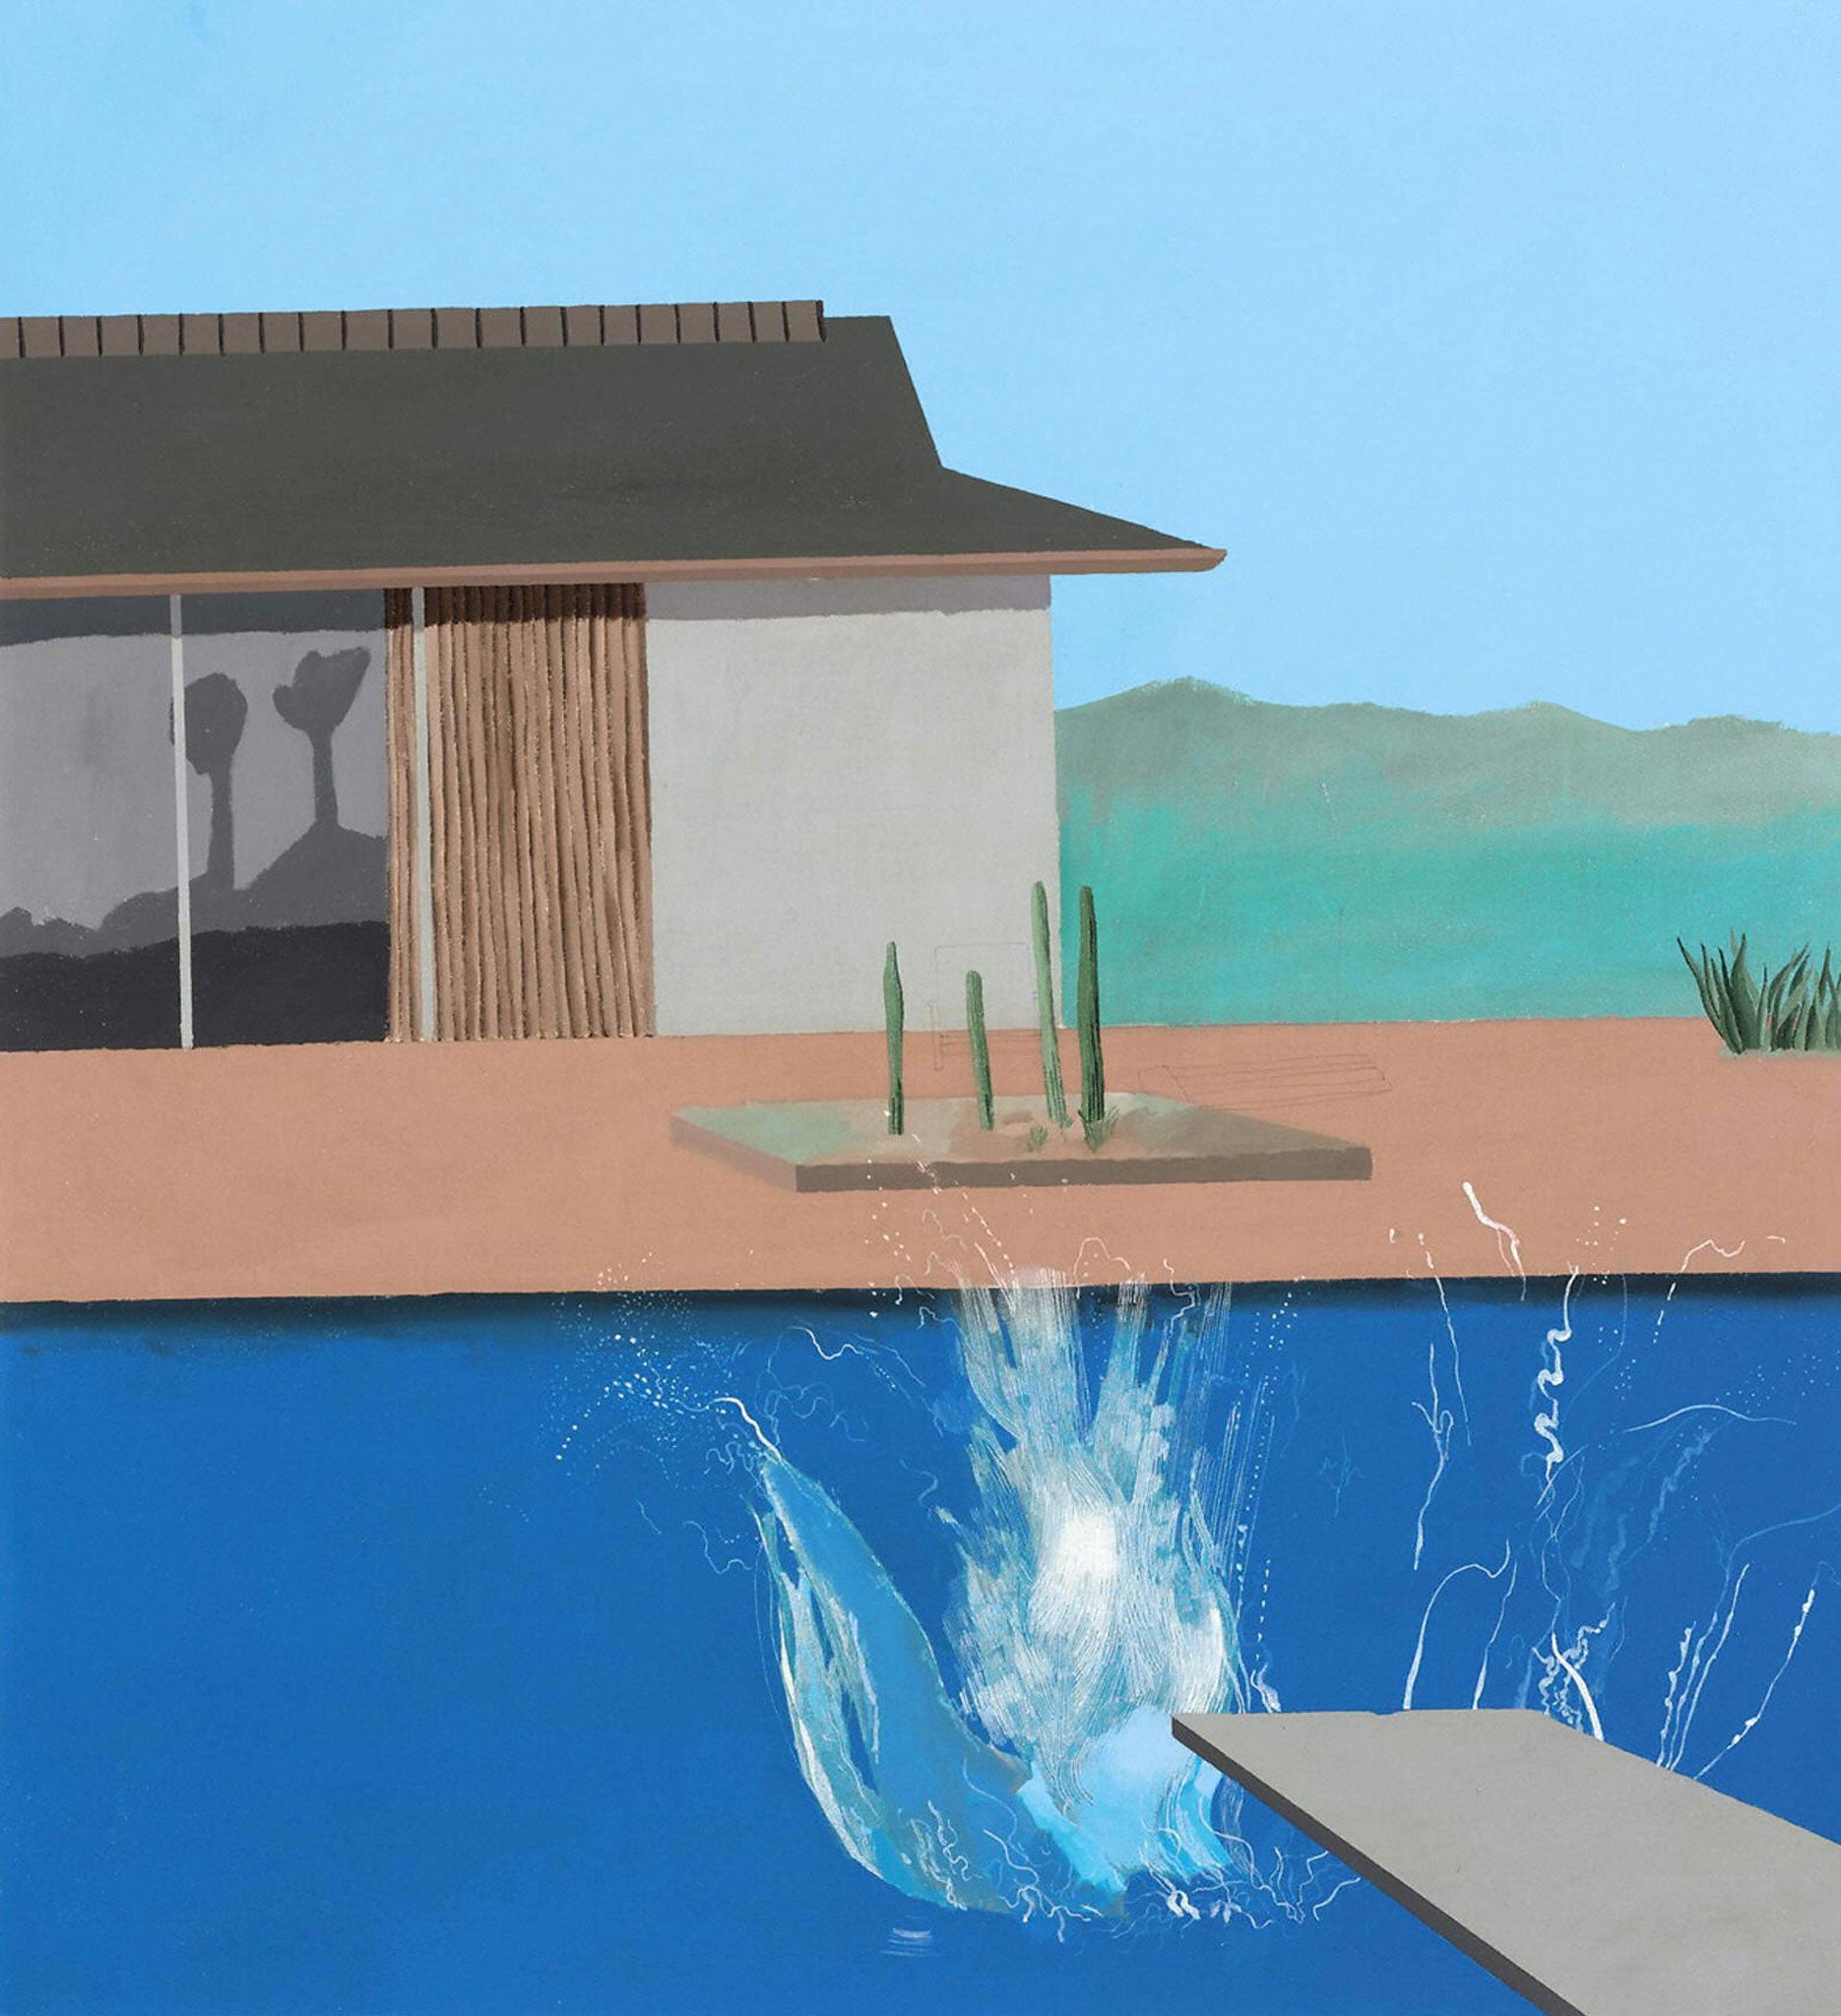 Nosedive: David Hockney's 'The Splash'